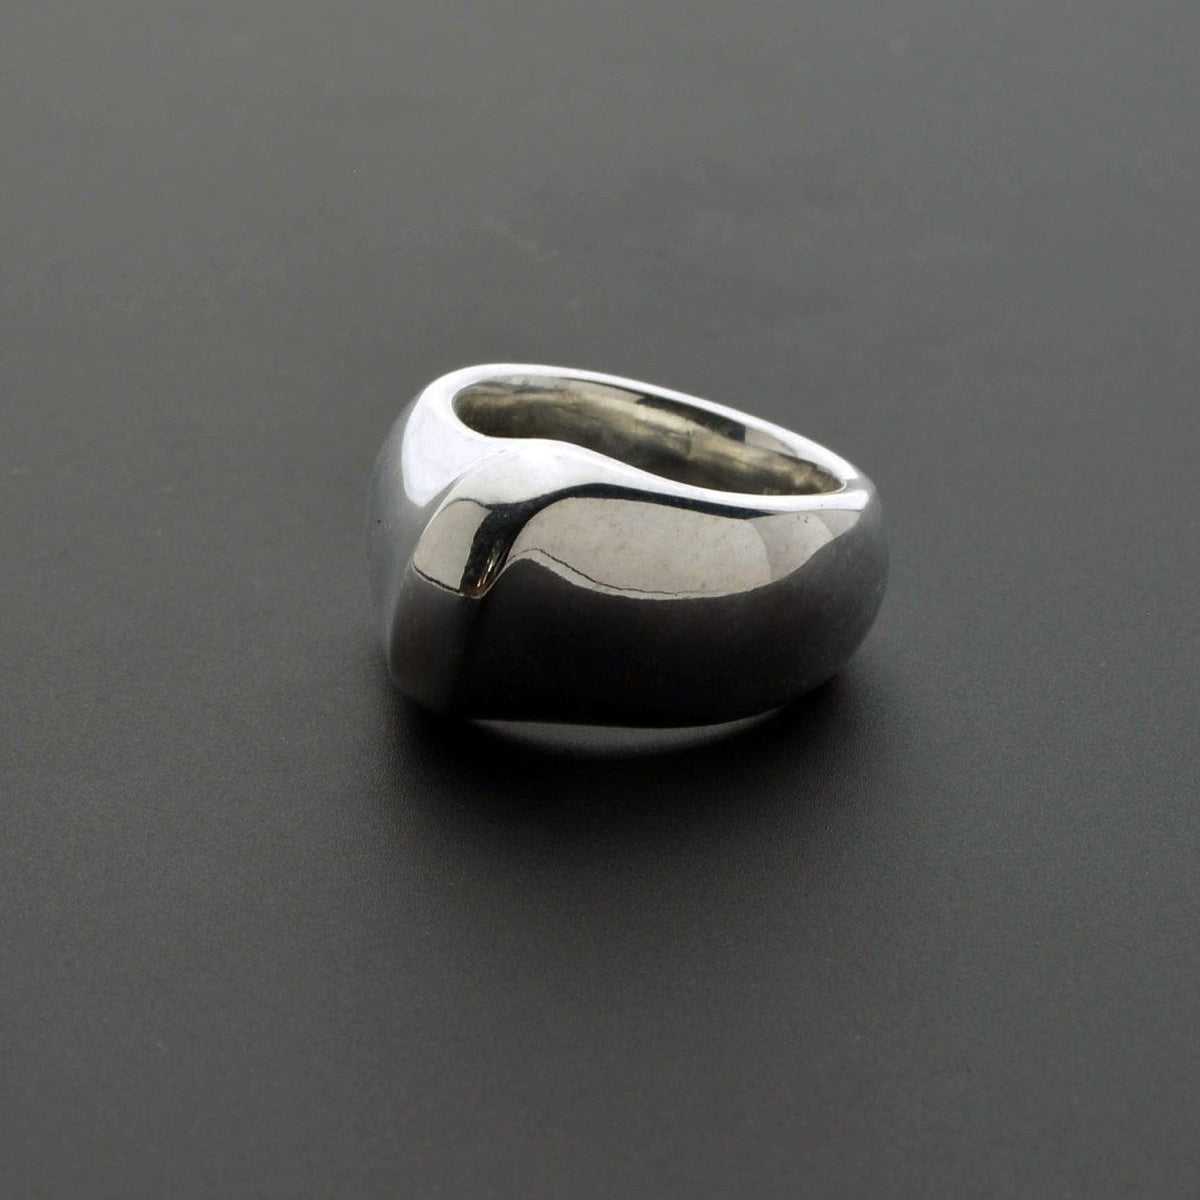 Love ring with unique design